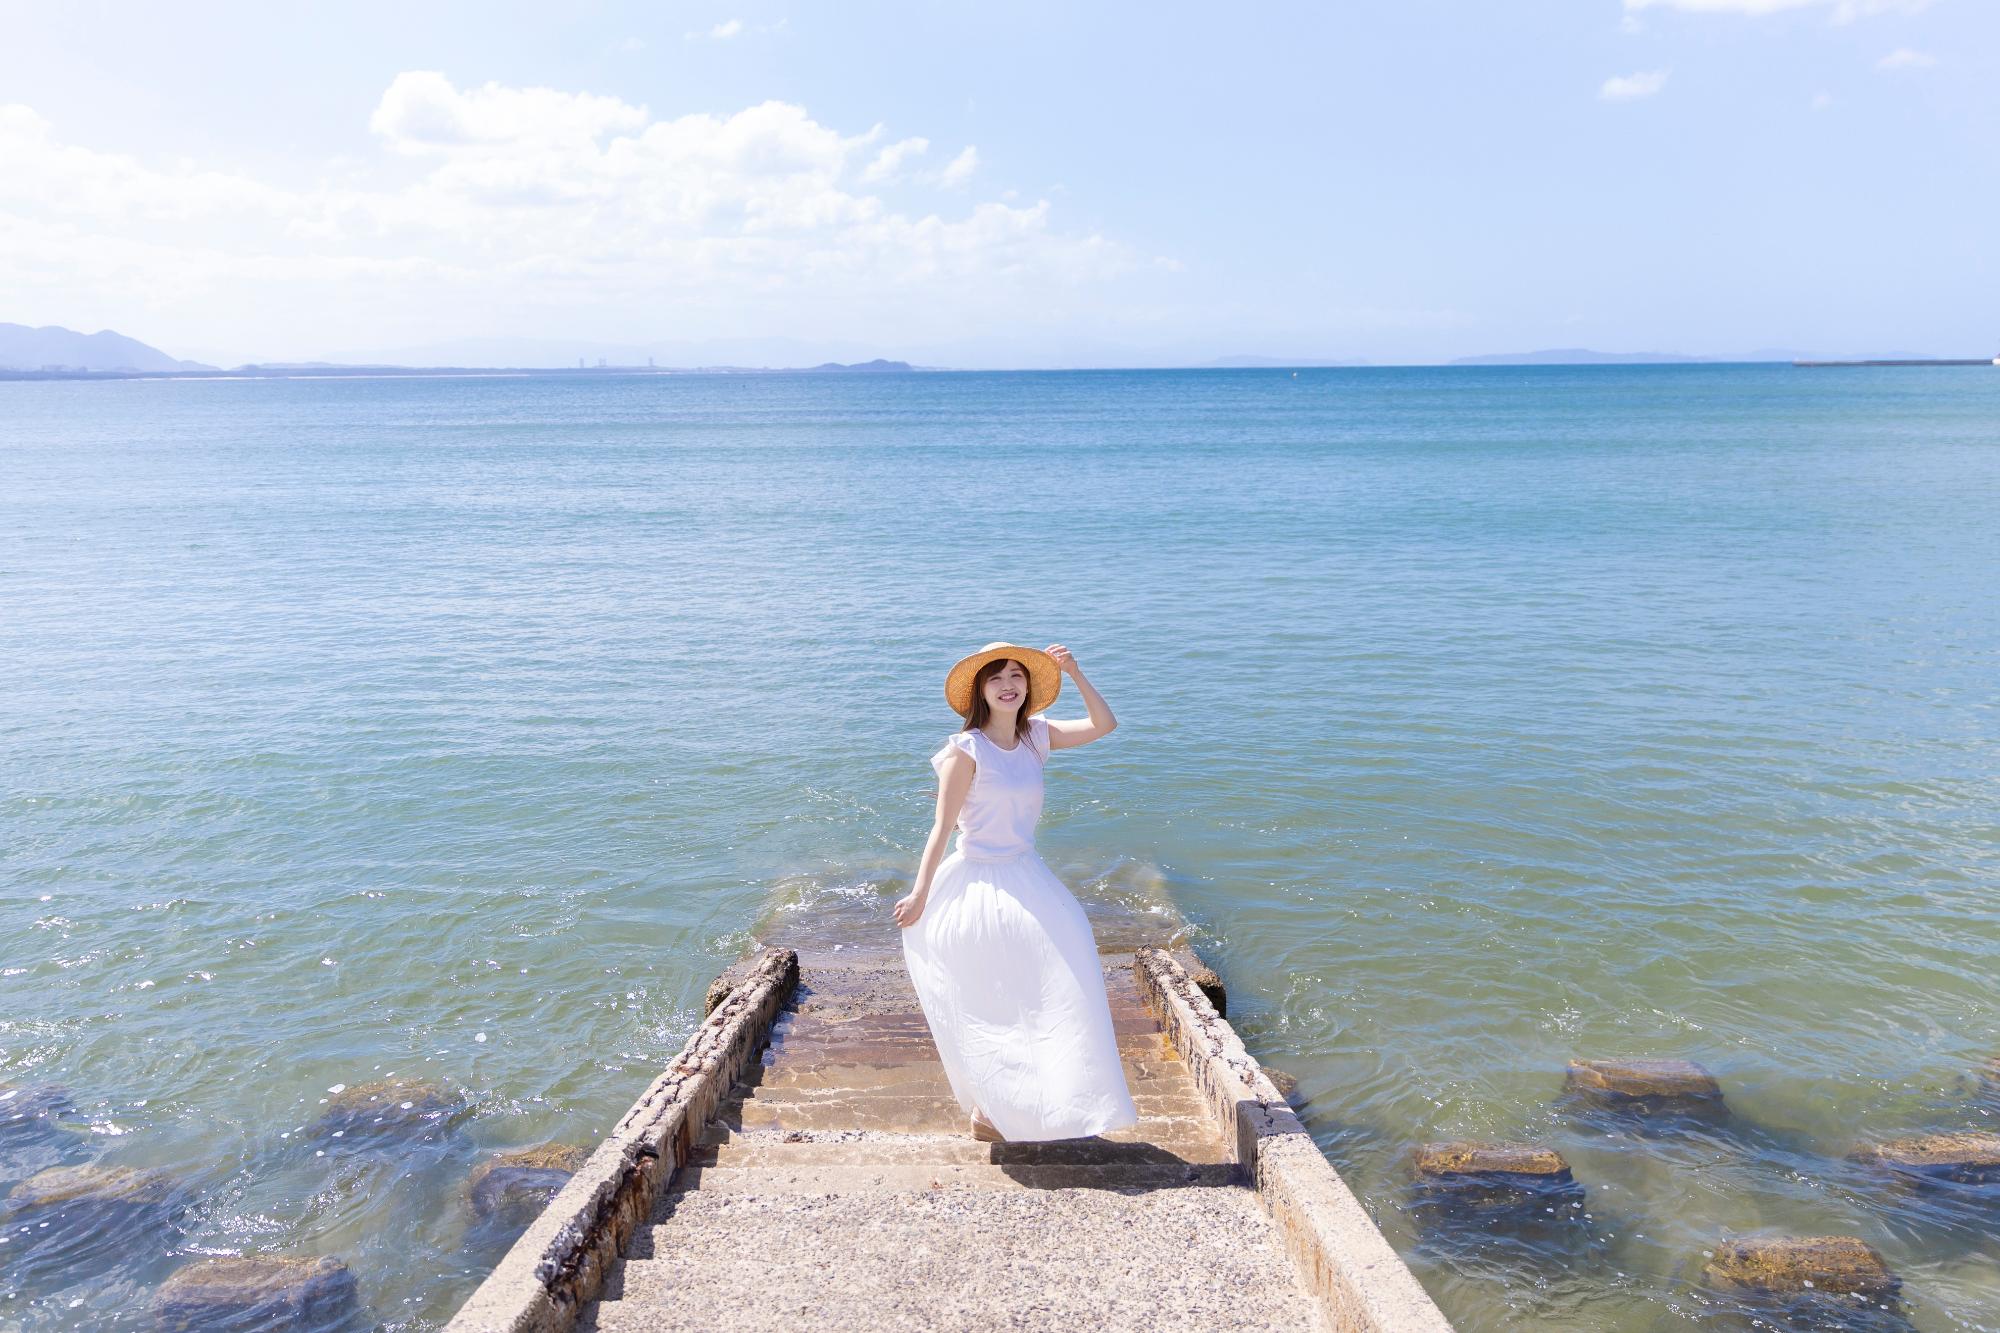 津屋崎海岸を背景に白い服を着てこっちを向く新木さくらさん